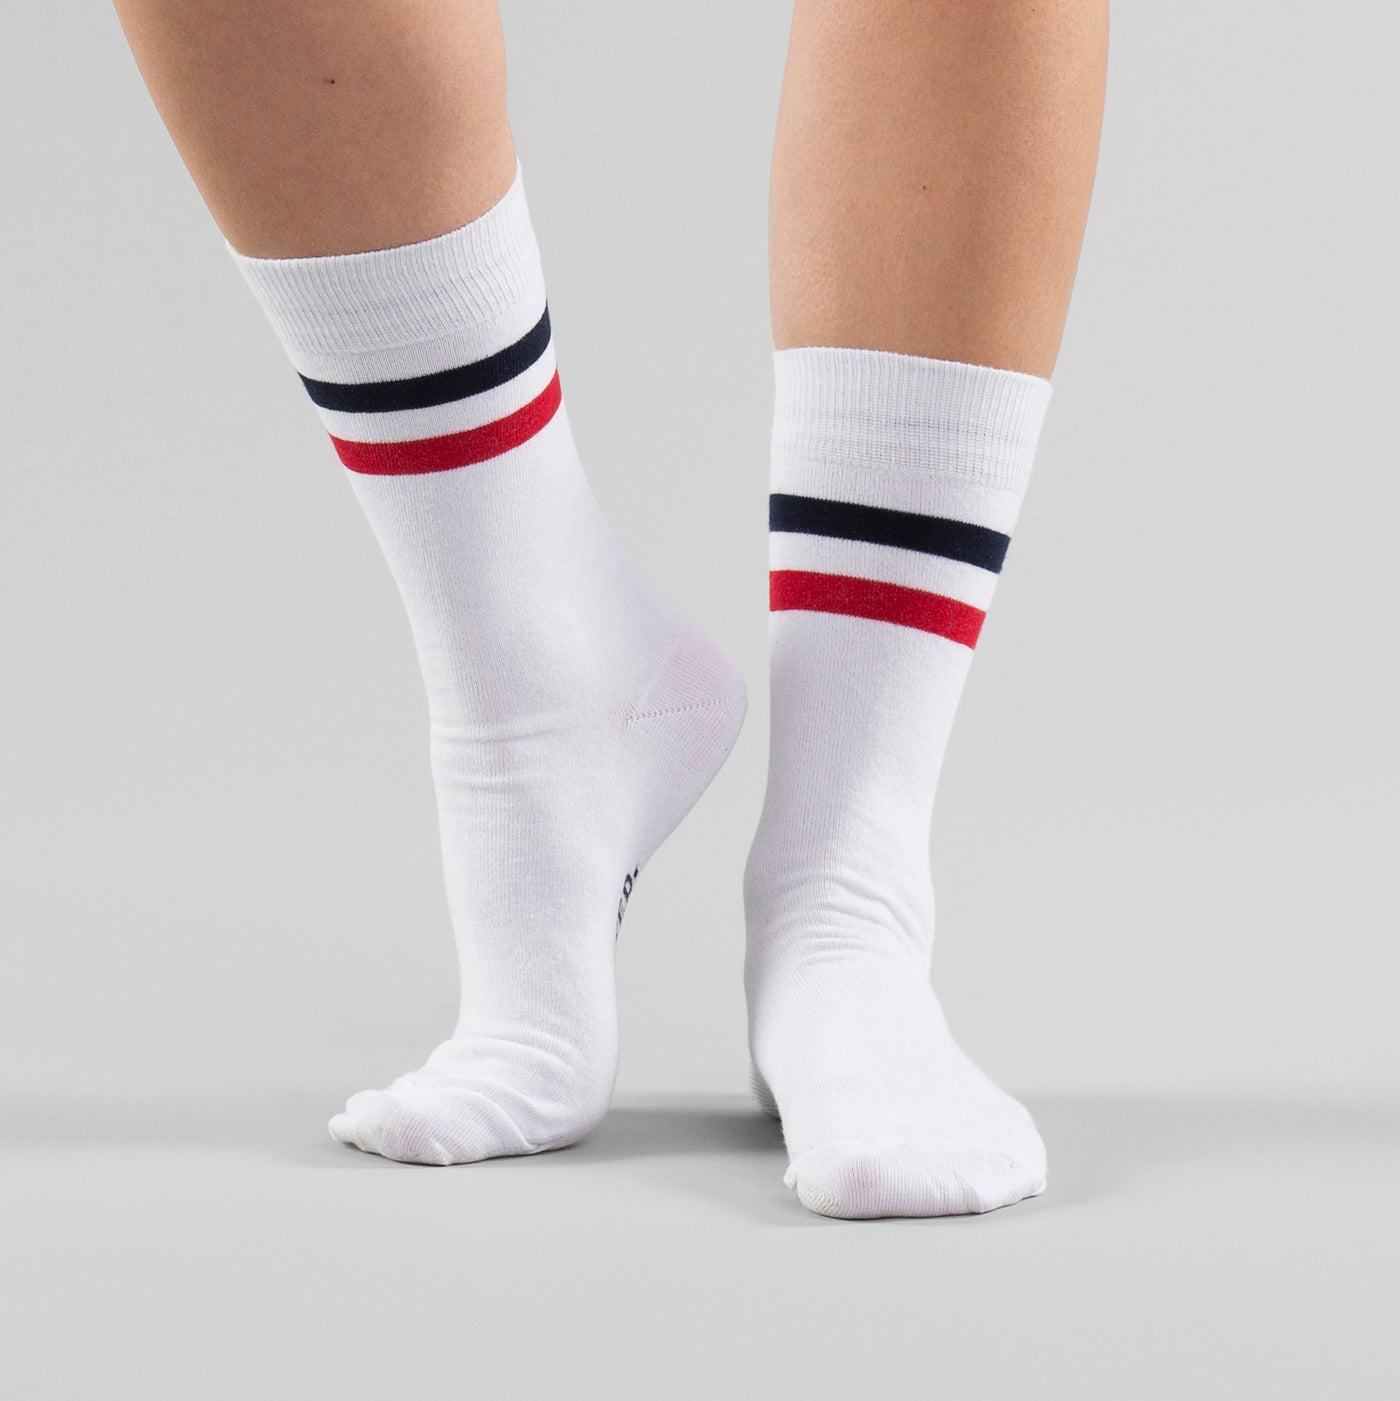 Socks Sigtuna Double Stripes in weiß mit blauen und roten Streifen.